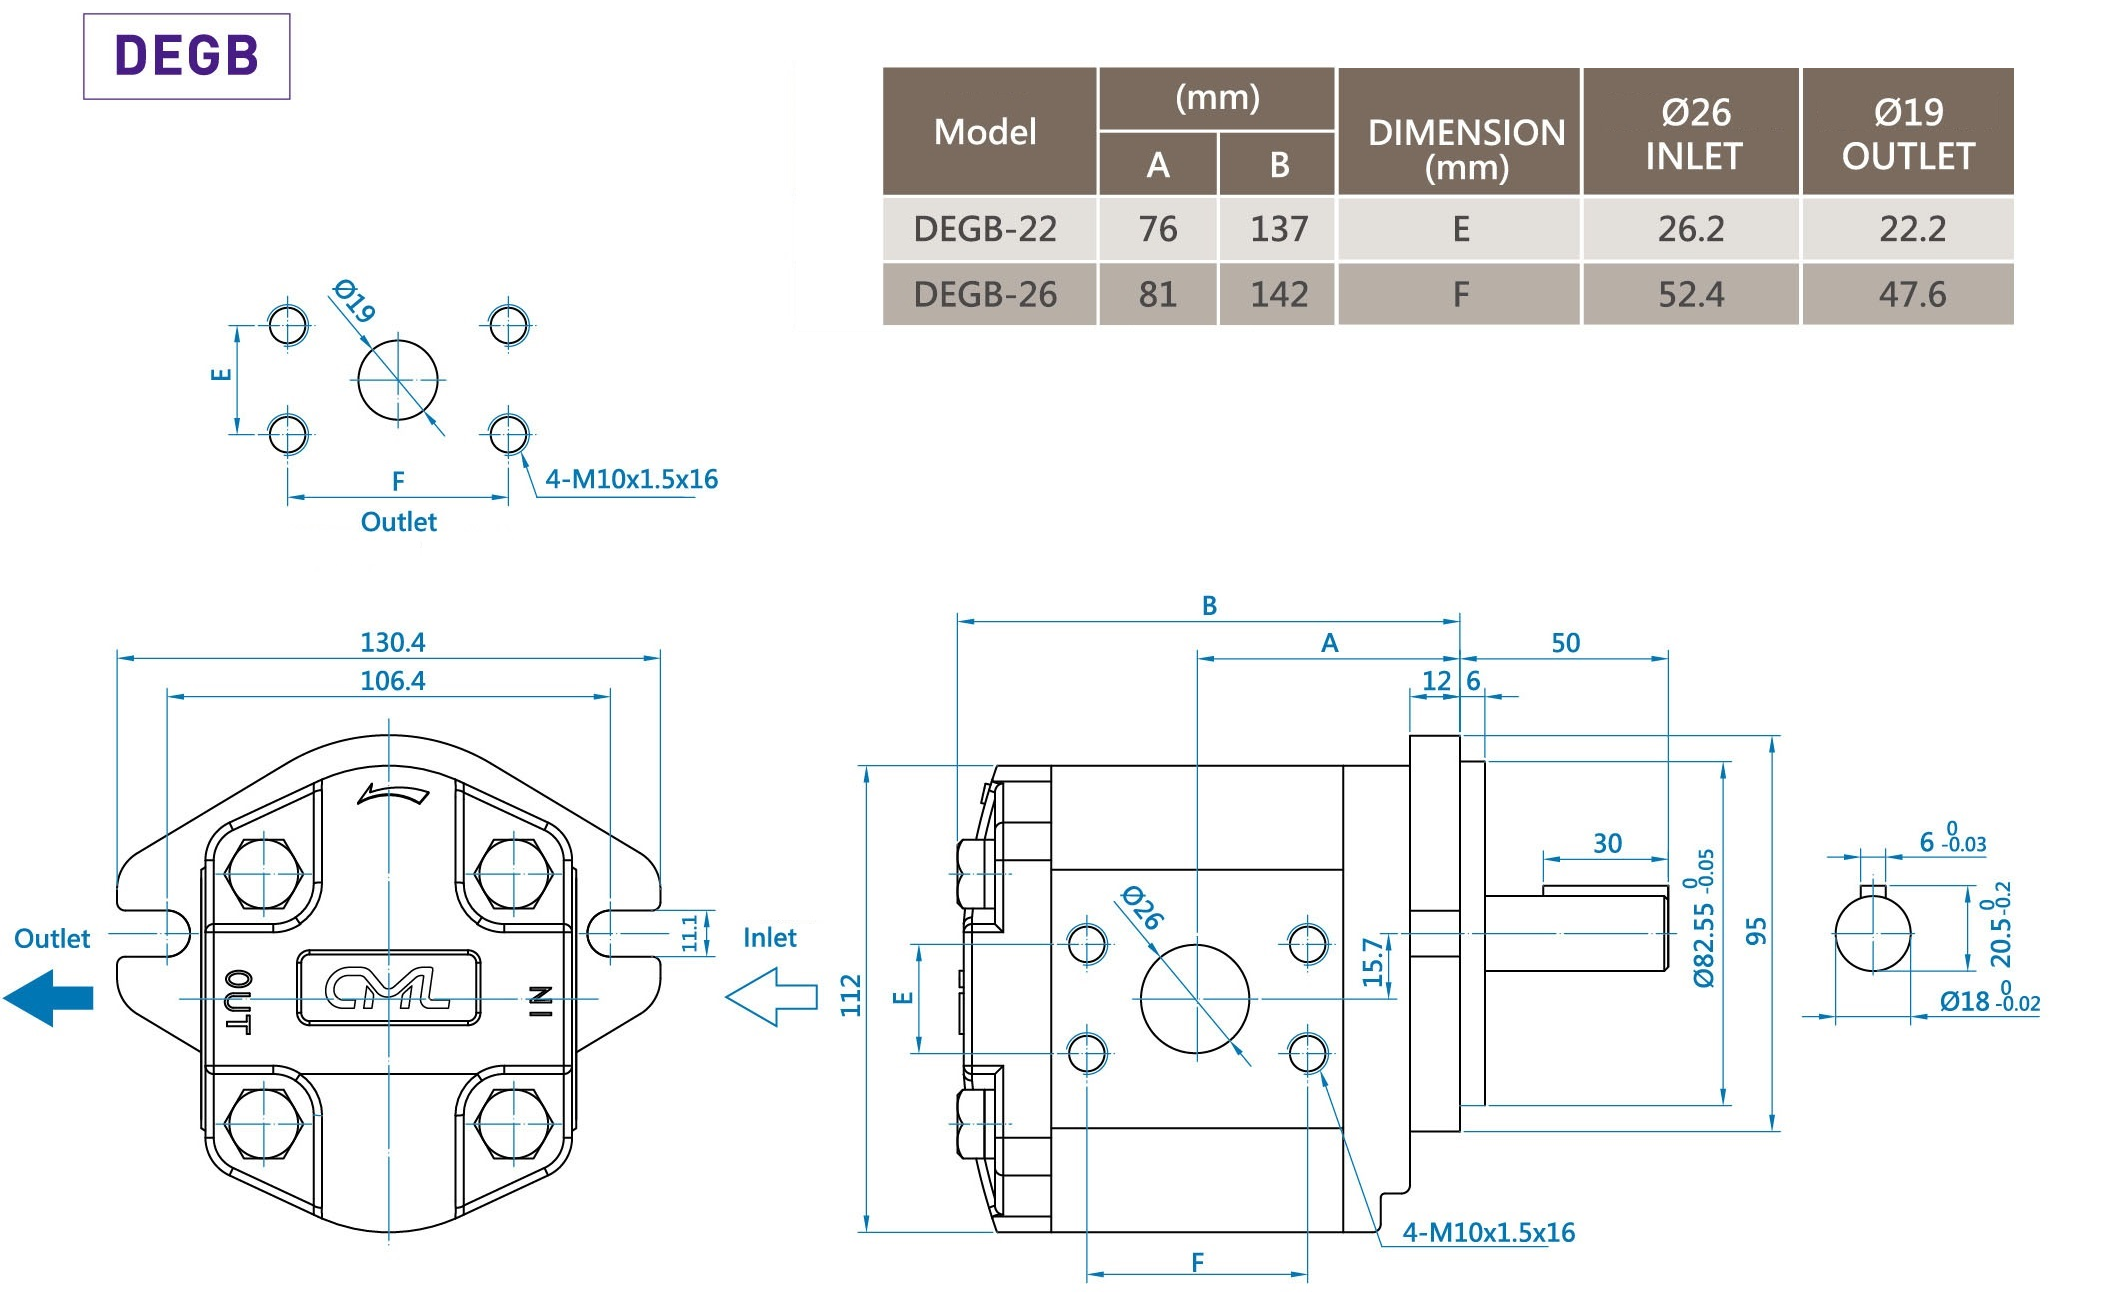 CML Double-gear B Series Low noise External Gear Pump DEGB Measurement, Dimension, Diagram